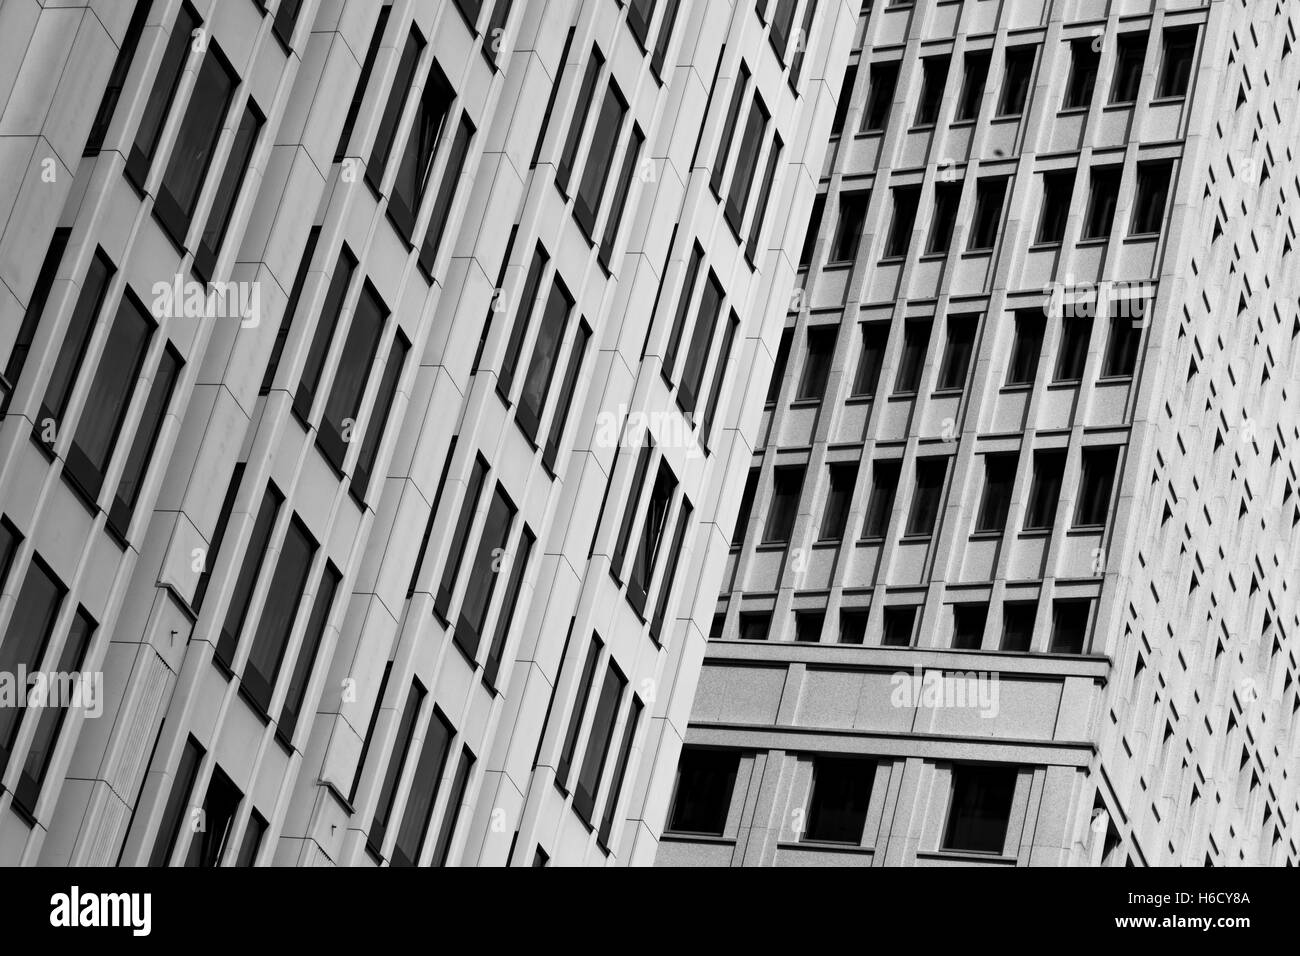 Architektur Fenster Muster Abstraktion Stockfoto